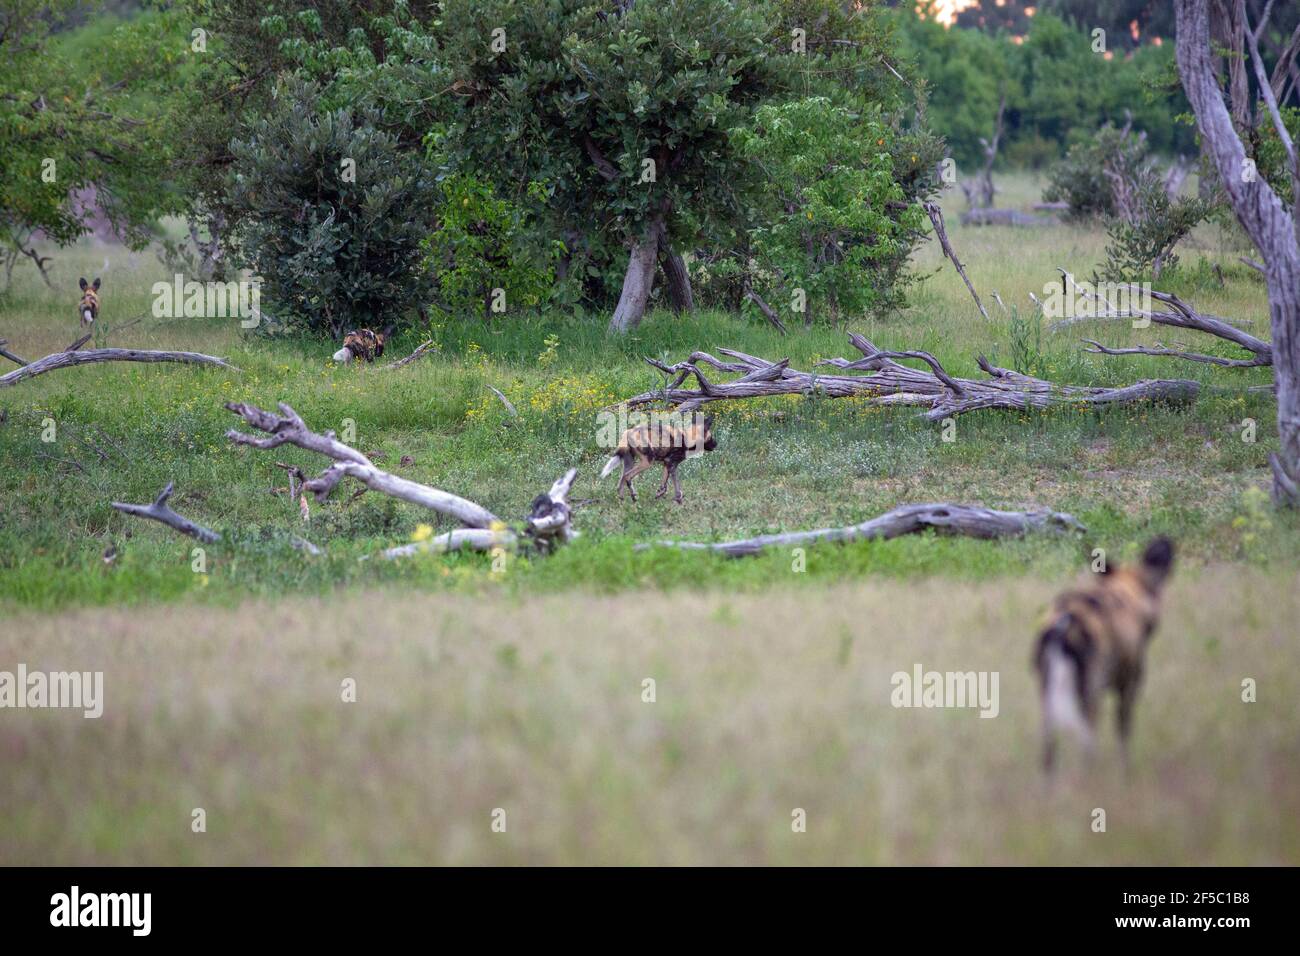 Cani da caccia africani, Lupi dipinti (Lycaon pictus), posizioni in prima linea come pacchetto inizia un approccio a, ma non visibile, animali prede di Impala. Foto Stock